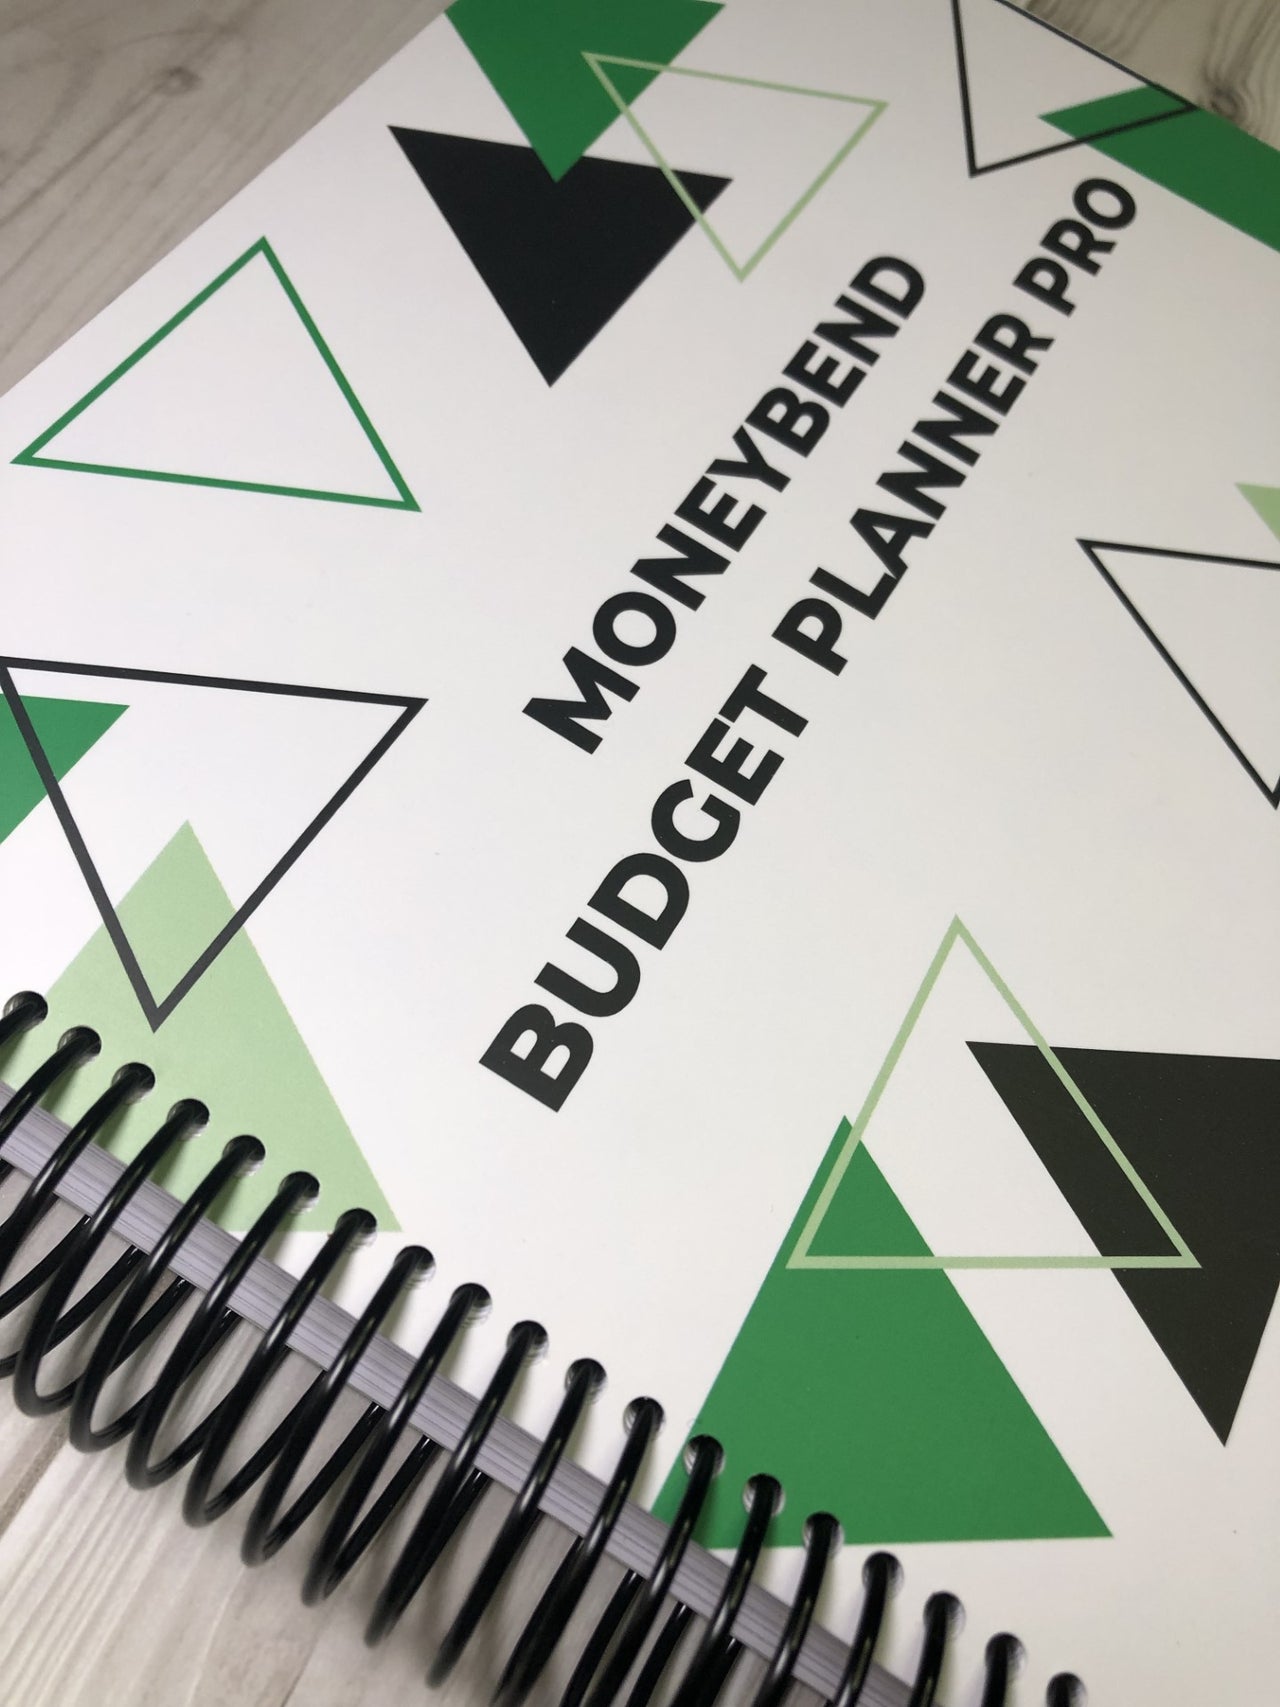 MoneyBend Budget Planner PRO